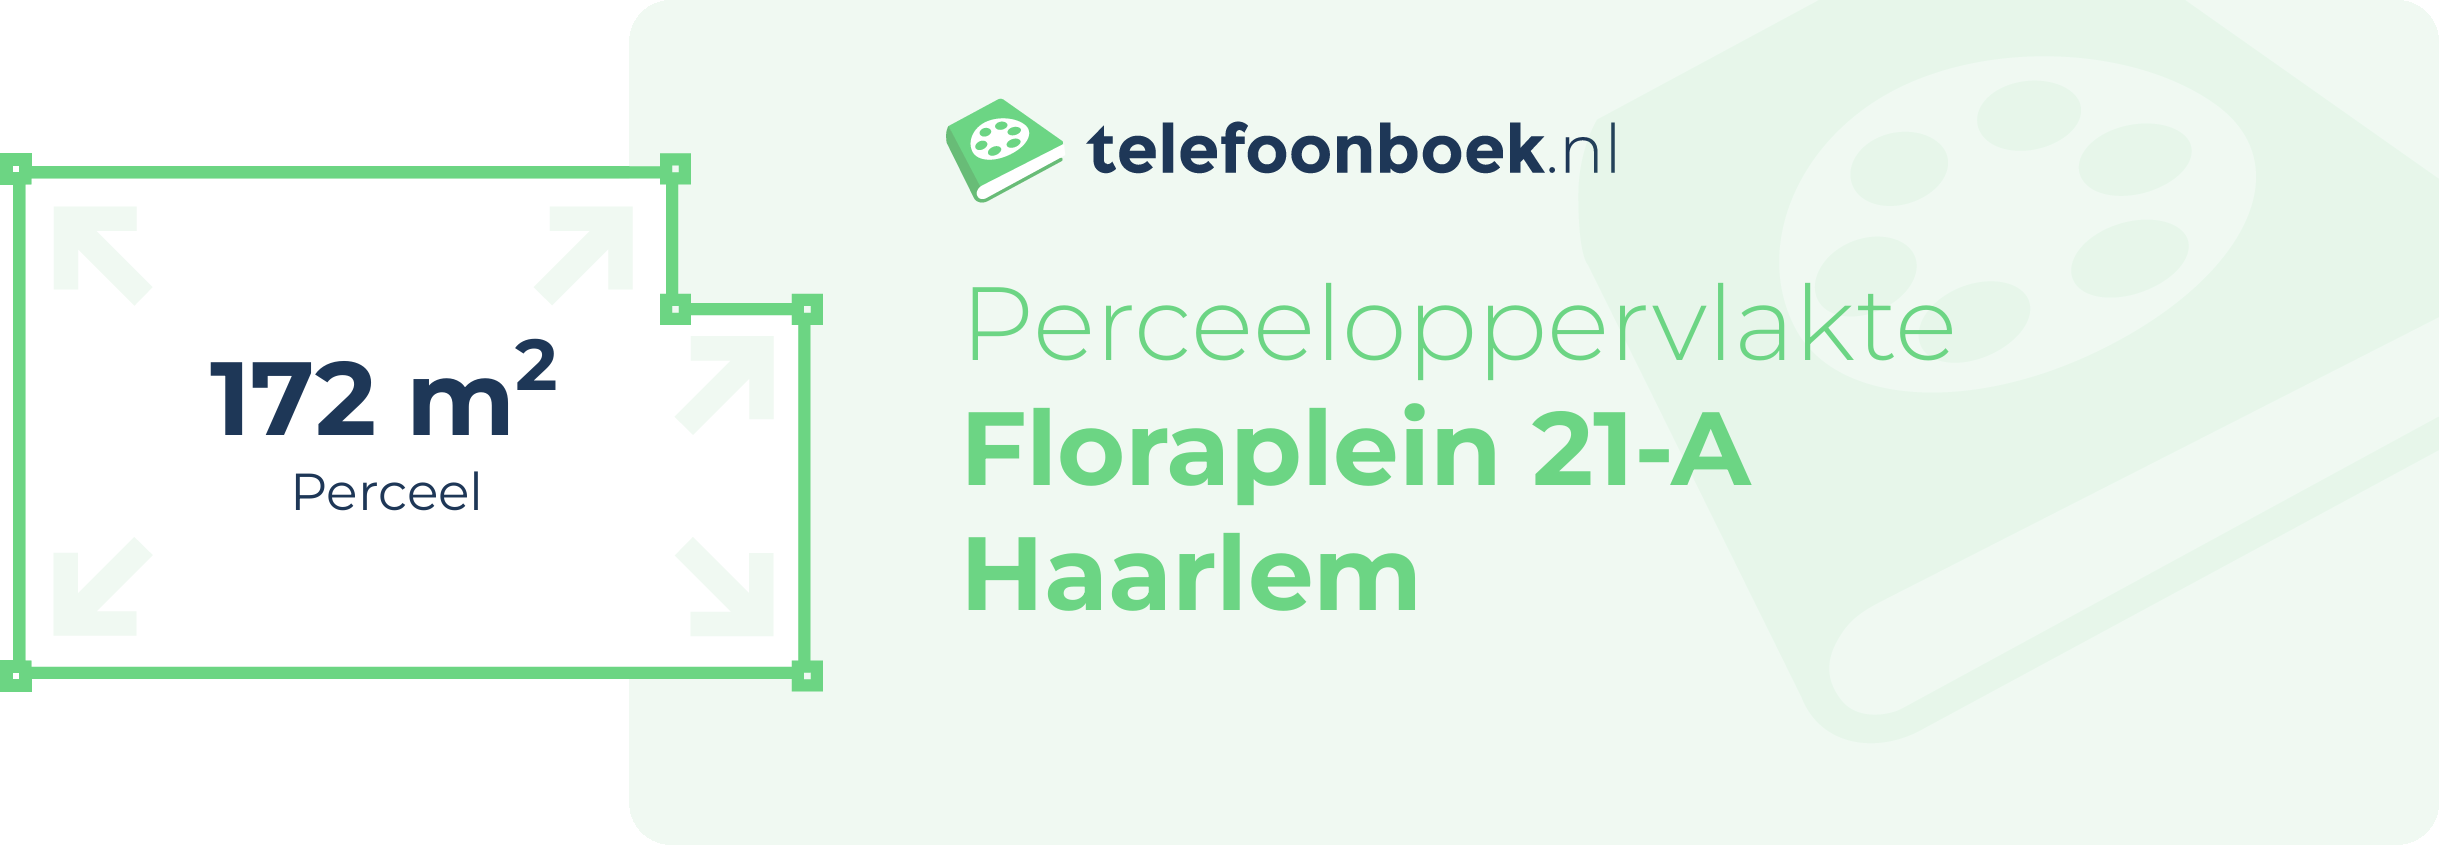 Perceeloppervlakte Floraplein 21-A Haarlem